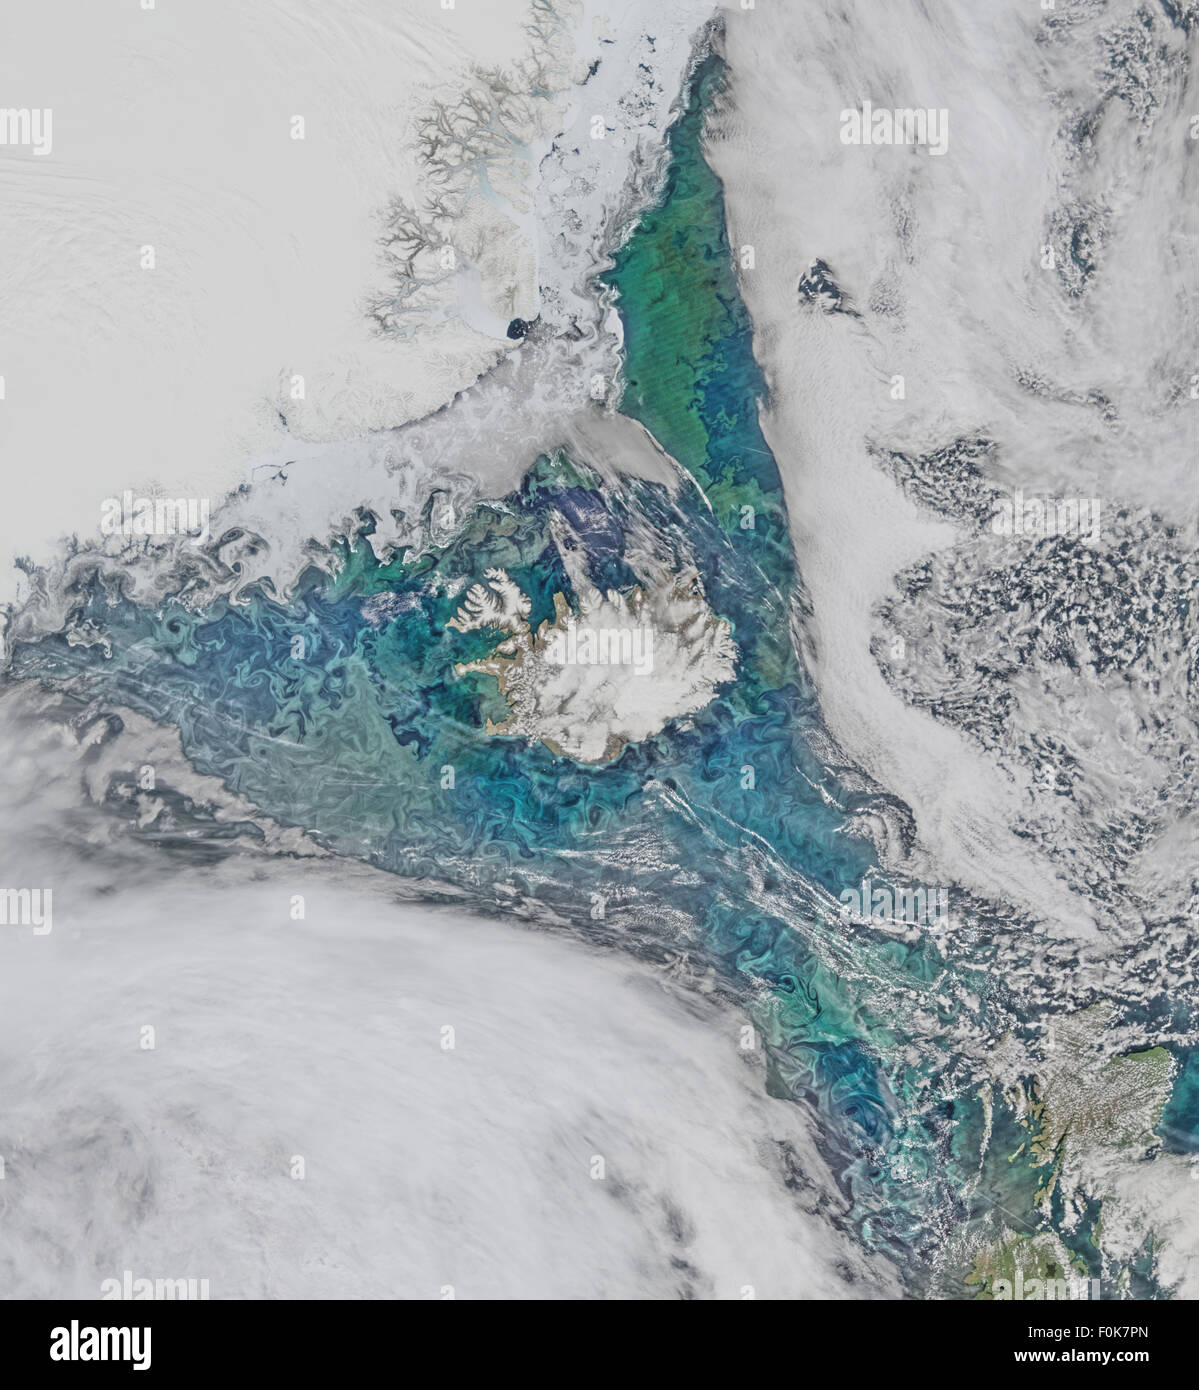 Las comunidades de fitoplancton y el mar de hielo limn el campo de flujo turbulento en torno a Islandia en este Suomi-NPP/VIIRS escena reunidos el 14 de junio de 2015. Foto de stock